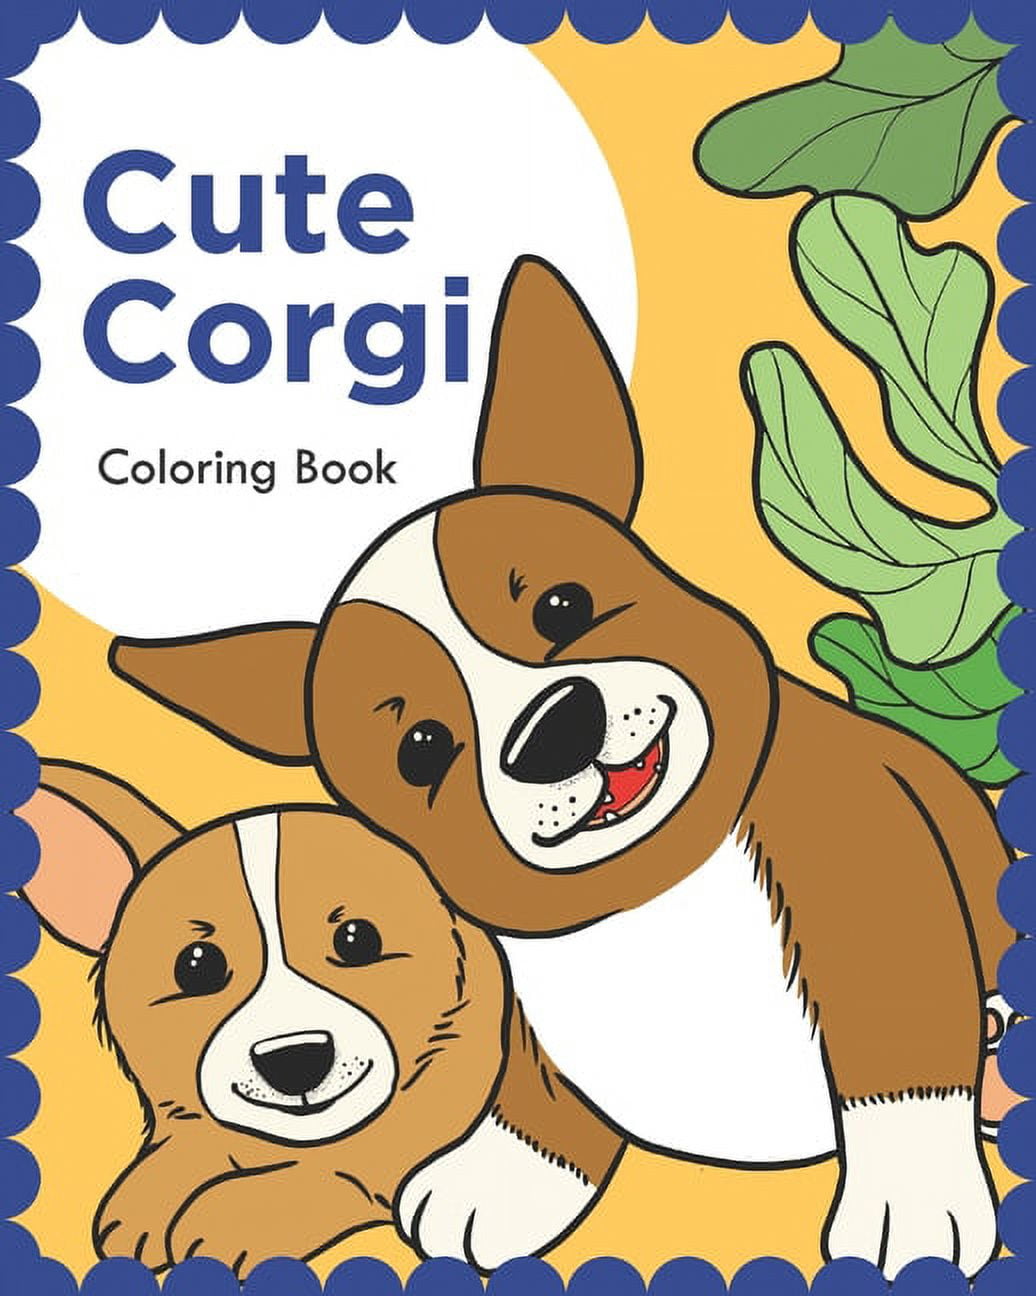 Cute corgi coloring book paperback